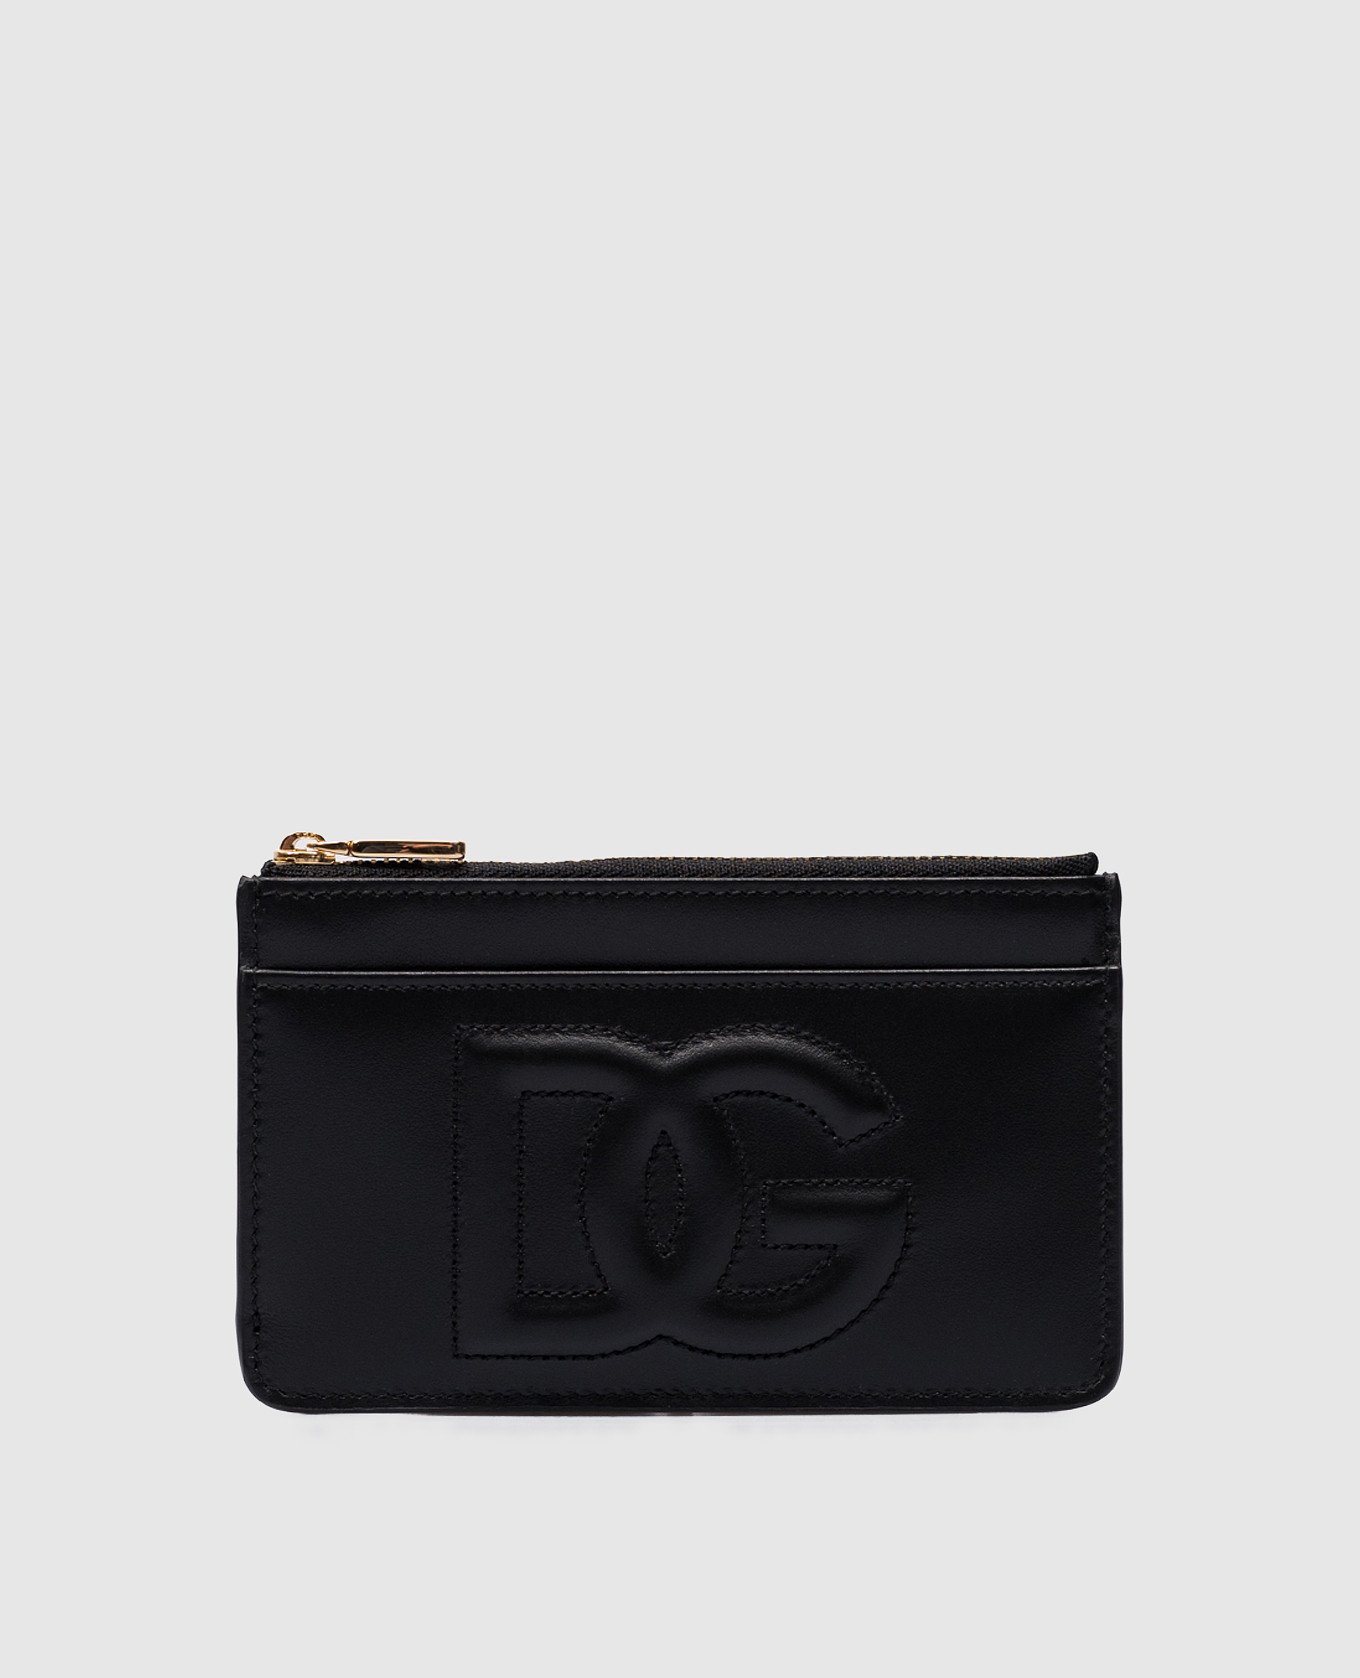 Black leather DG LOGO cardholder